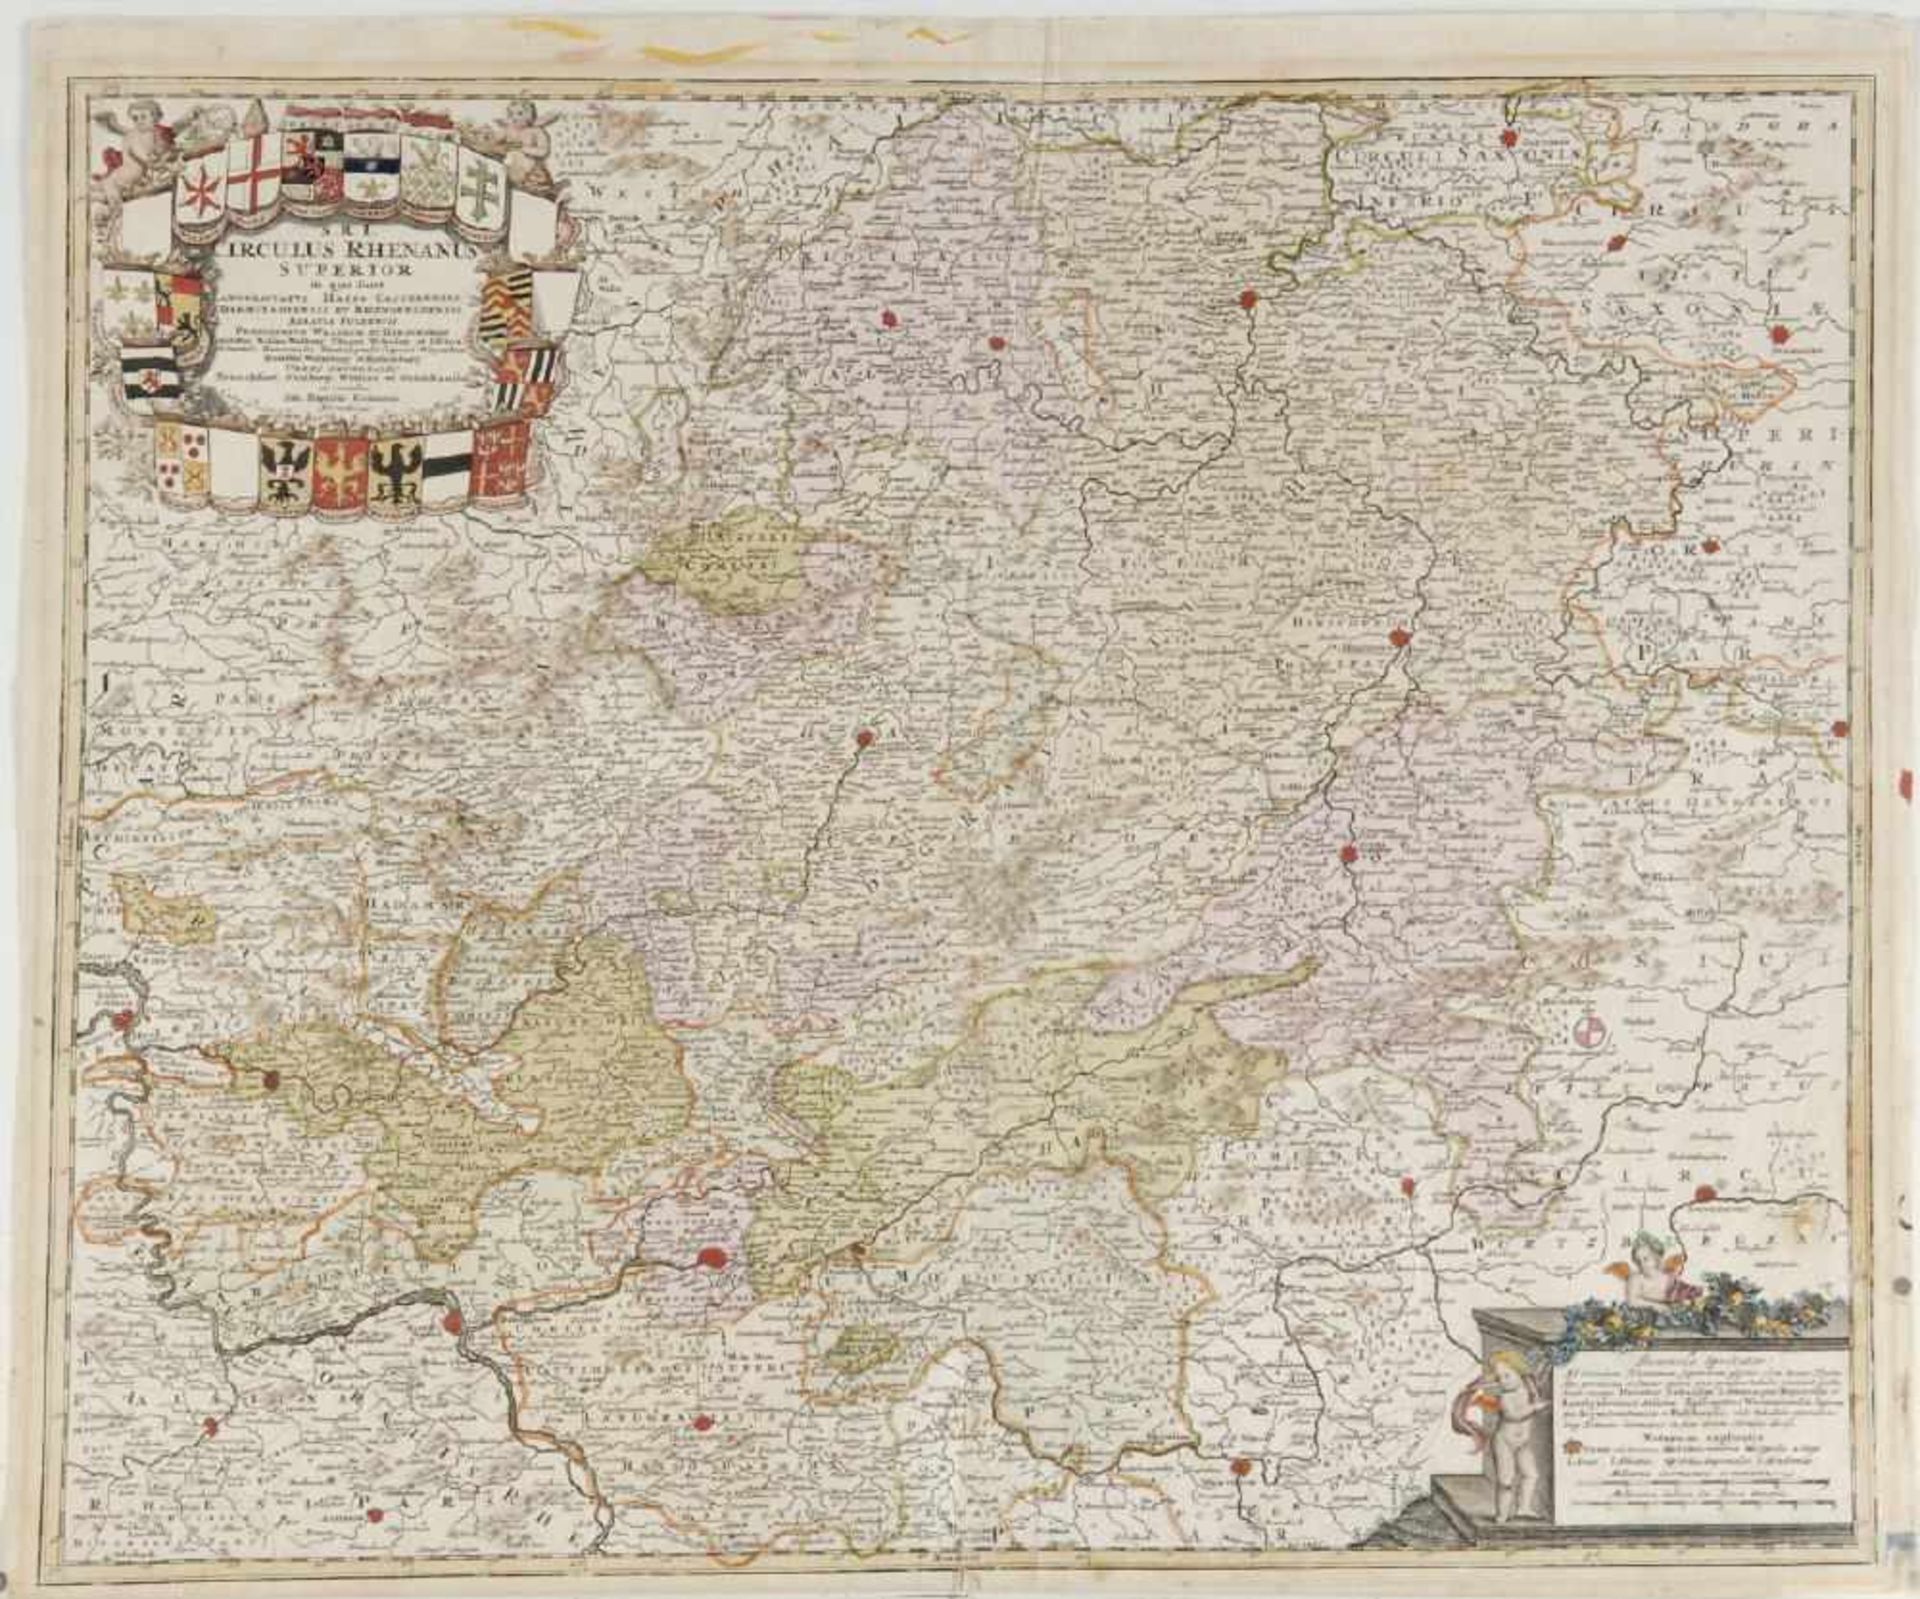 Landkarte "Circulus Rhenanus Superior"